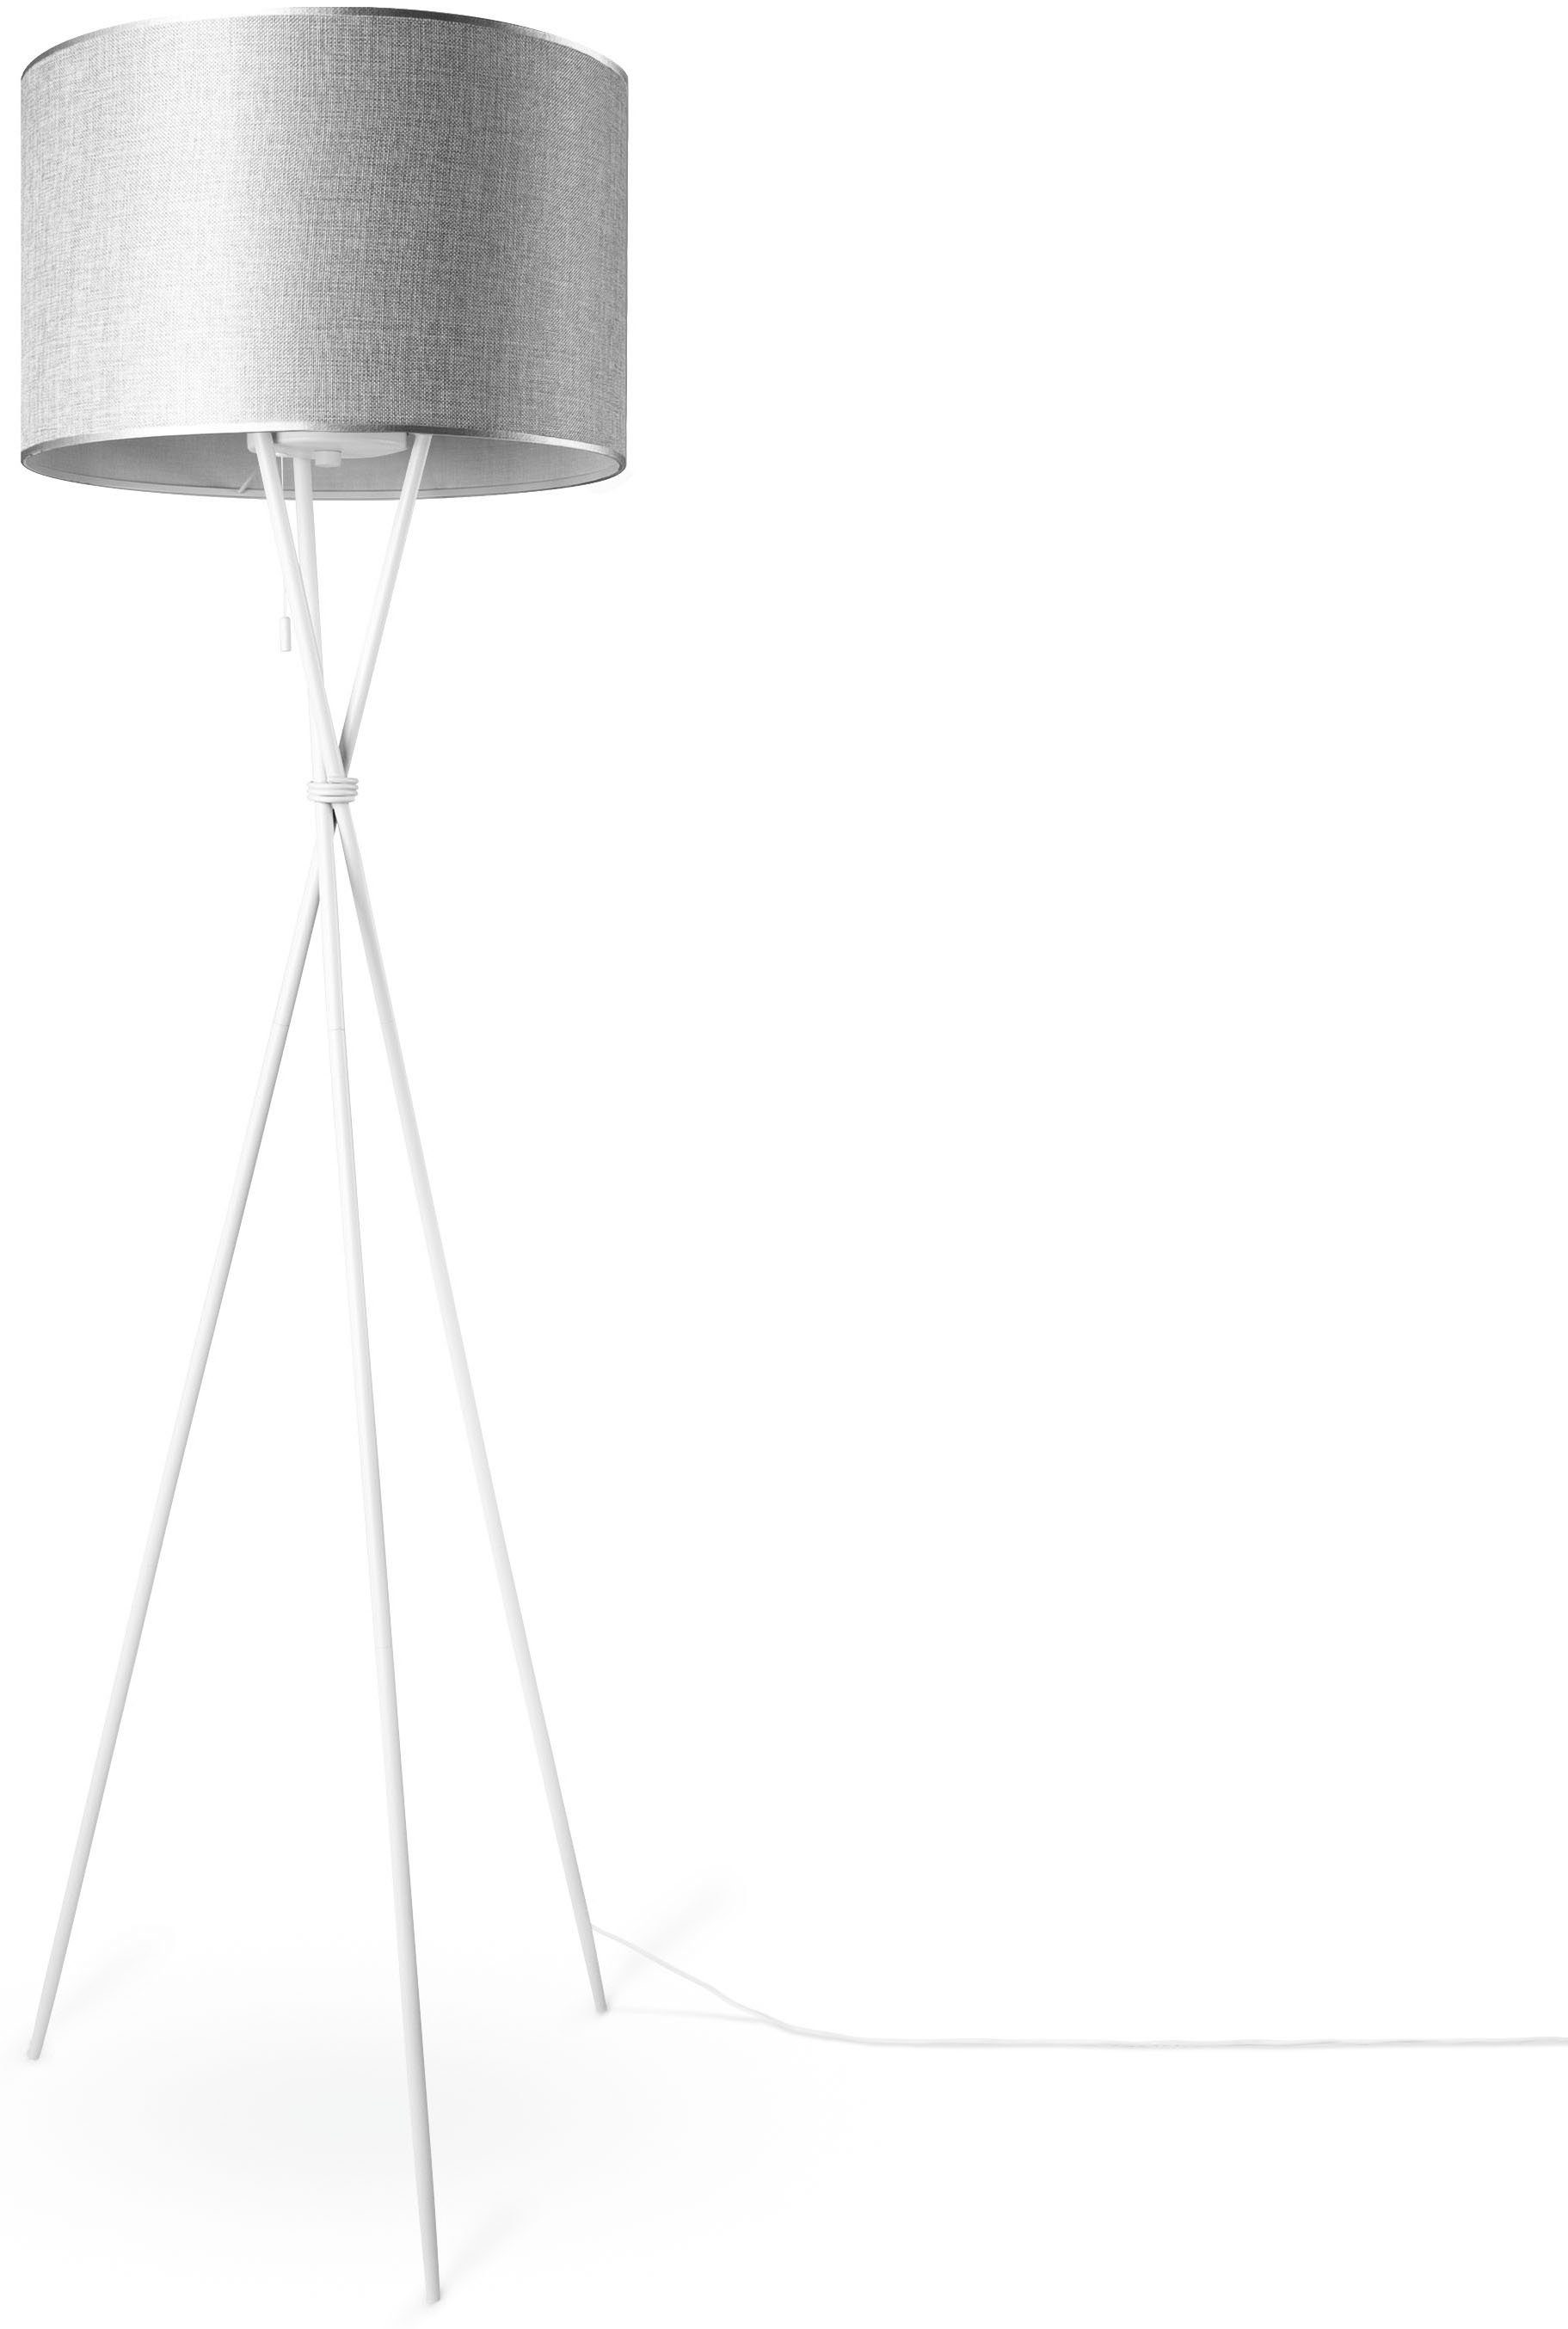 Paco Home Stehlampe KATE E27 Schirm Textil UNI Dreibein Standleuchte Stoffschirmlampe COLOR, Wohnzimmer grau Leuchtmittel, CANVAS ohne weiß